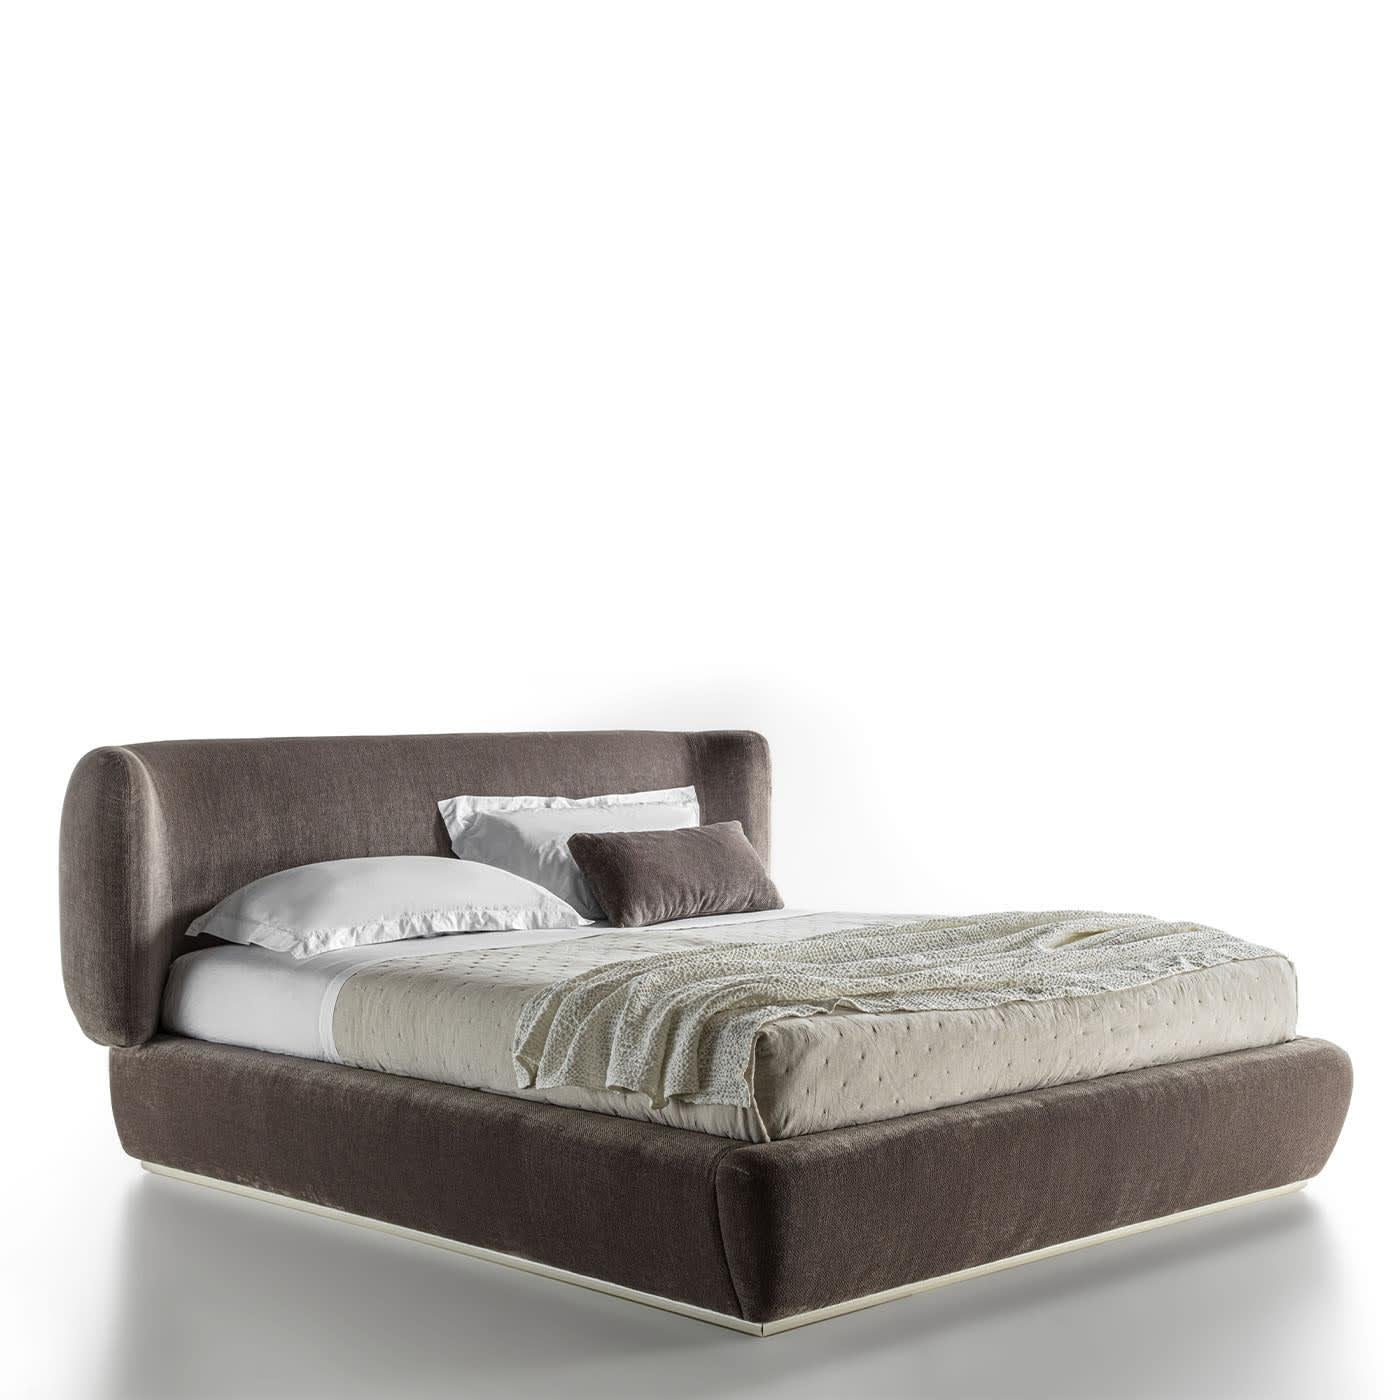 Gepolstertes Bett, das sich durch die Weichheit der Volumen auszeichnet. Lattenrost und Matratze sind nicht enthalten. Polstermöbel in verschiedenen Stoffen auf Anfrage erhältlich.